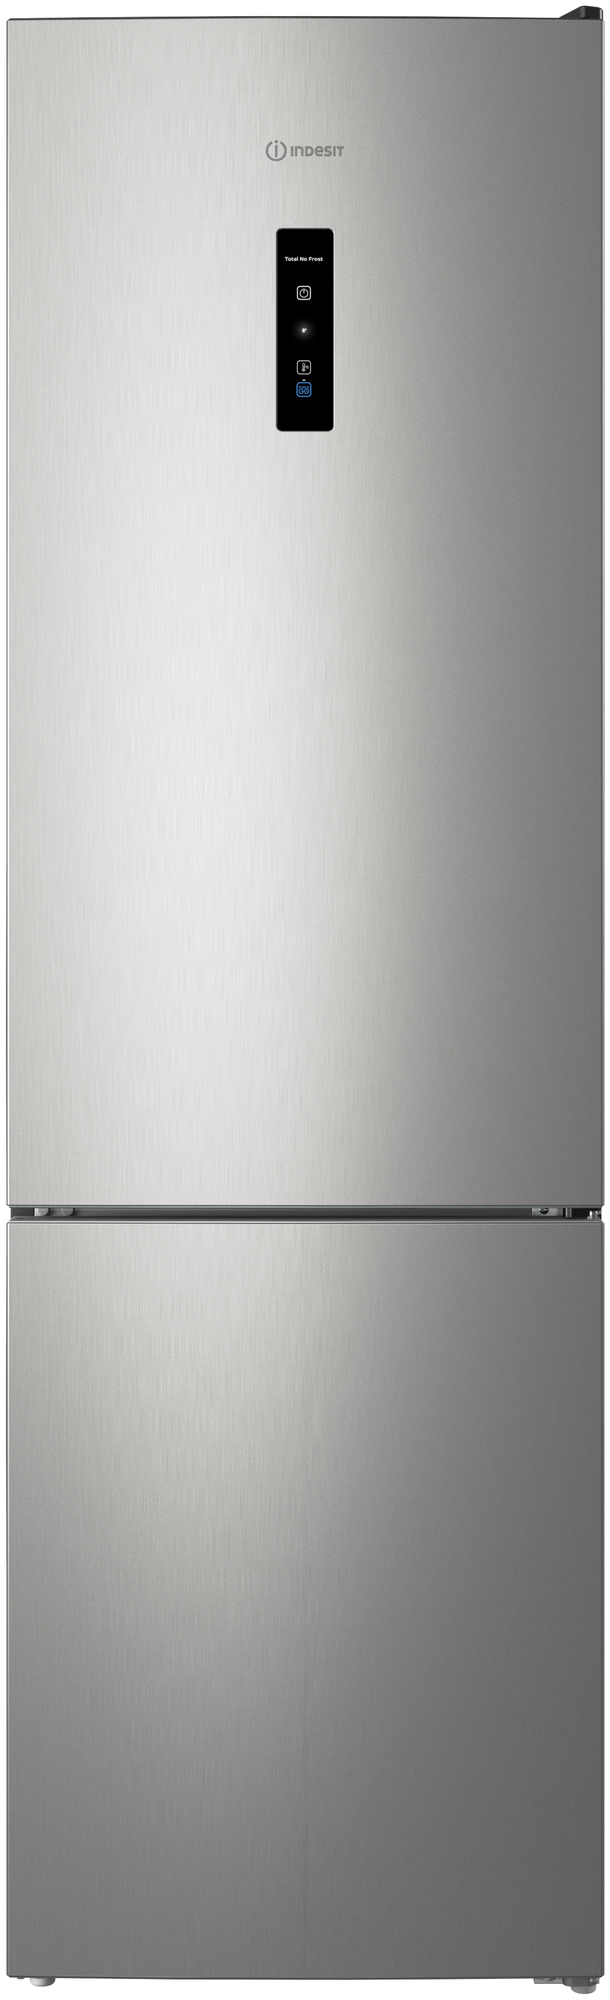 Отдельно стоящий холодильник Indesit с морозильной камерой: frost free ITR 5200 X